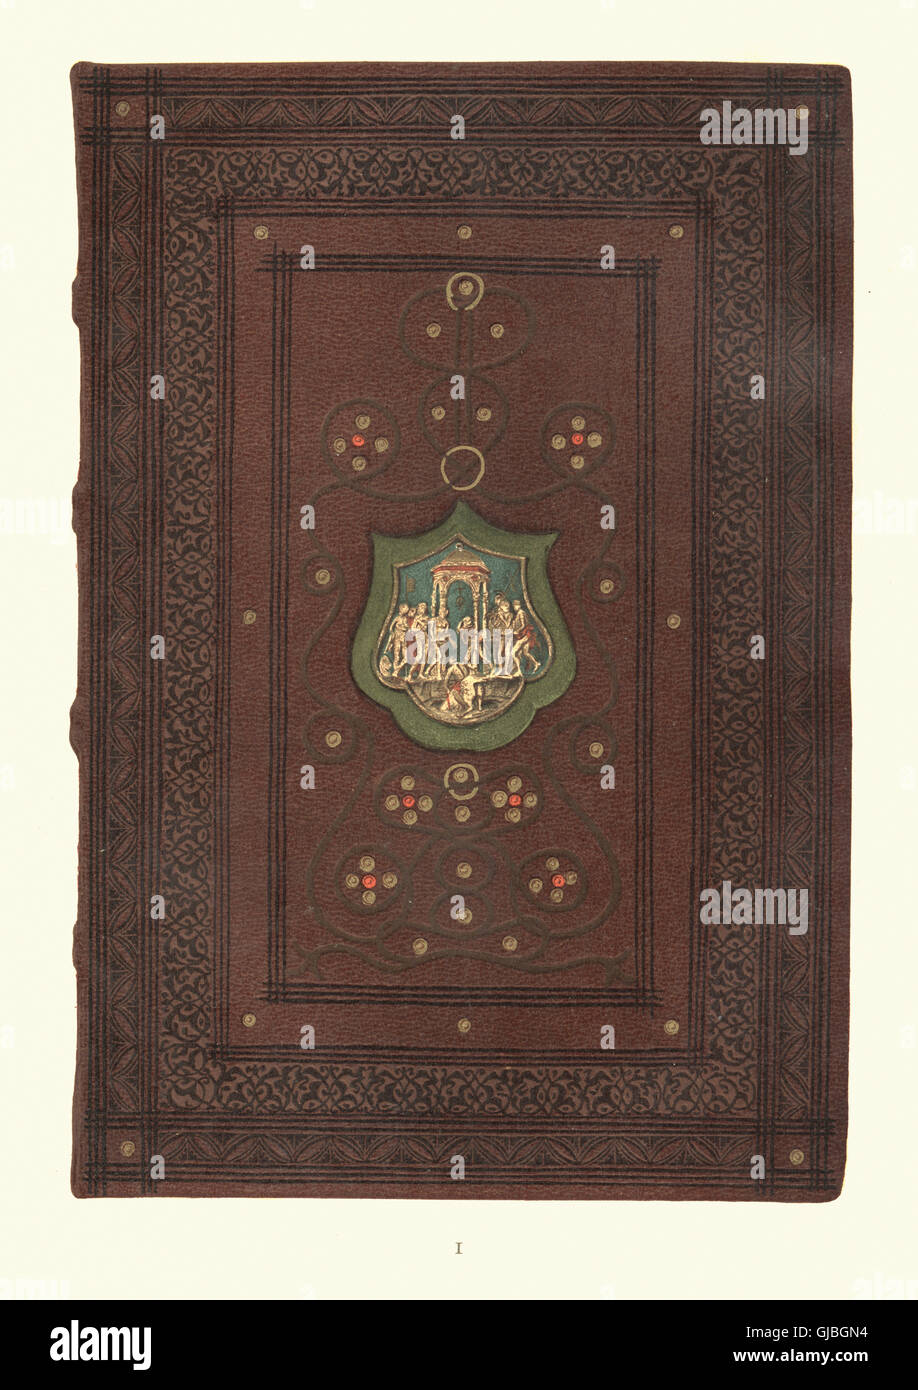 Farben-Lithographie der Bindung des mittelalterlichen Buches De Medicina von Celsus, 1497. Bibliographica. Stockfoto